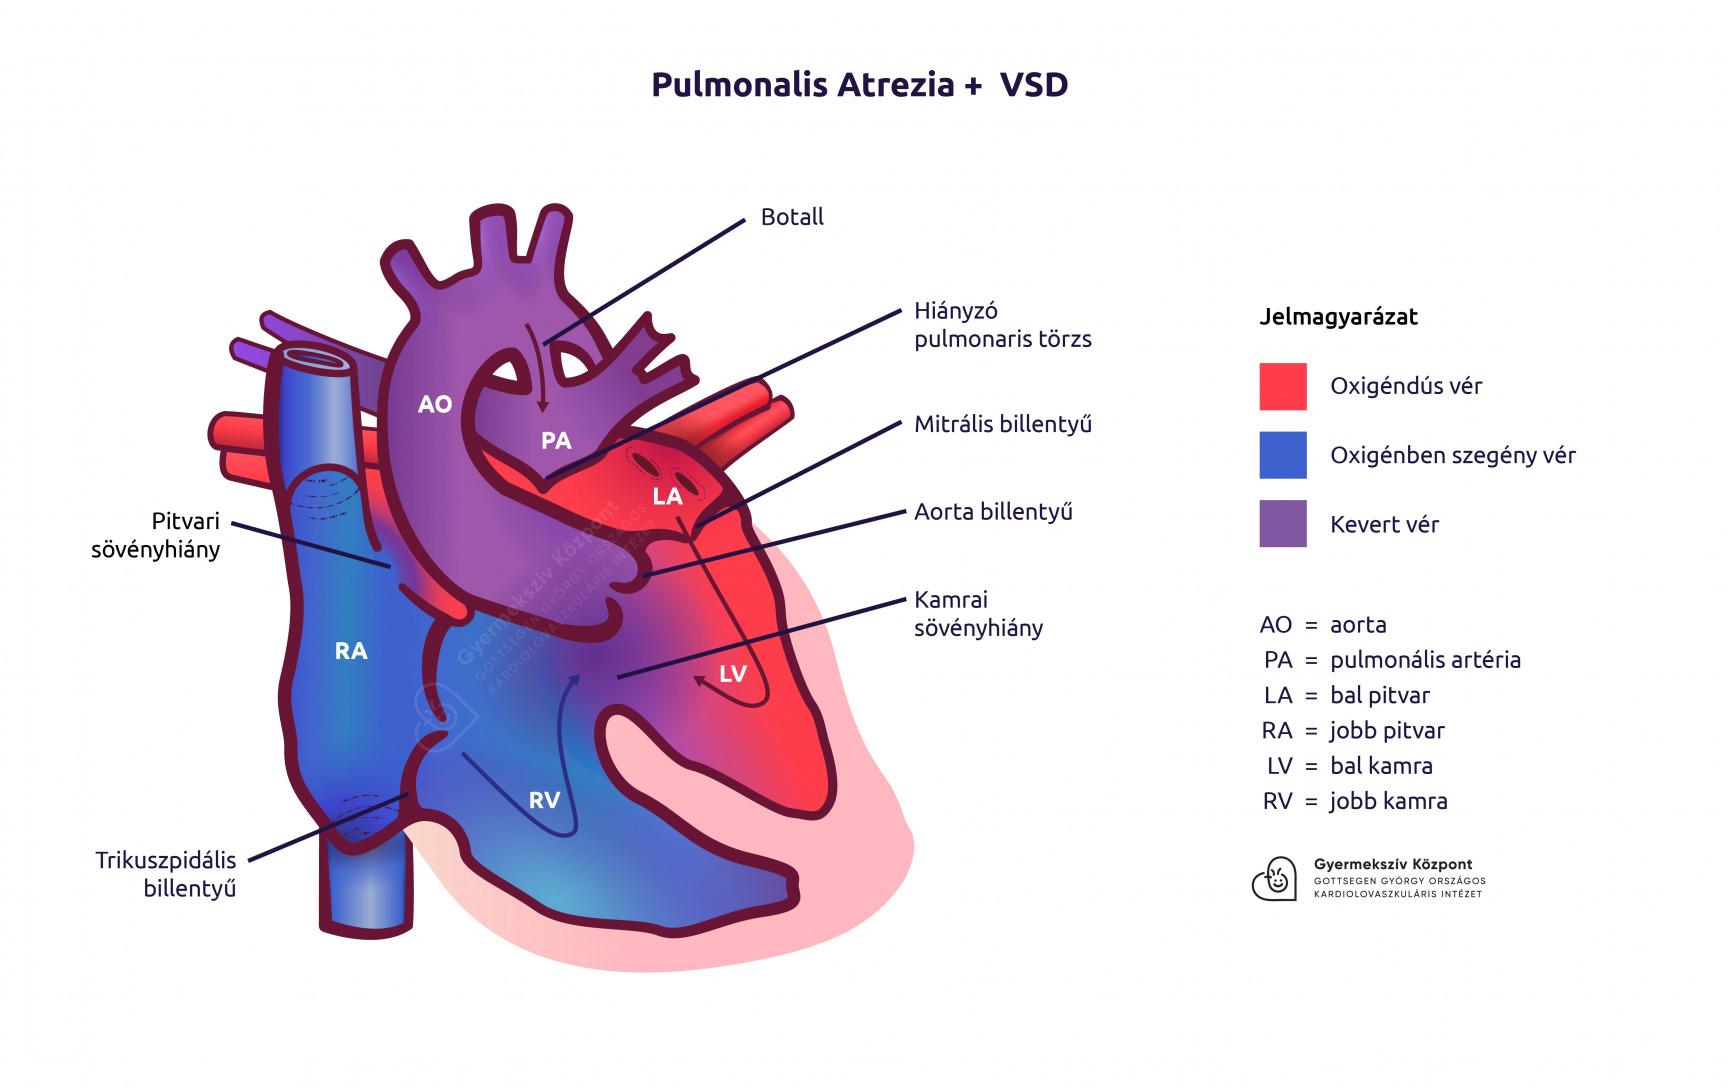 Pulmonalis atrezia + VSD